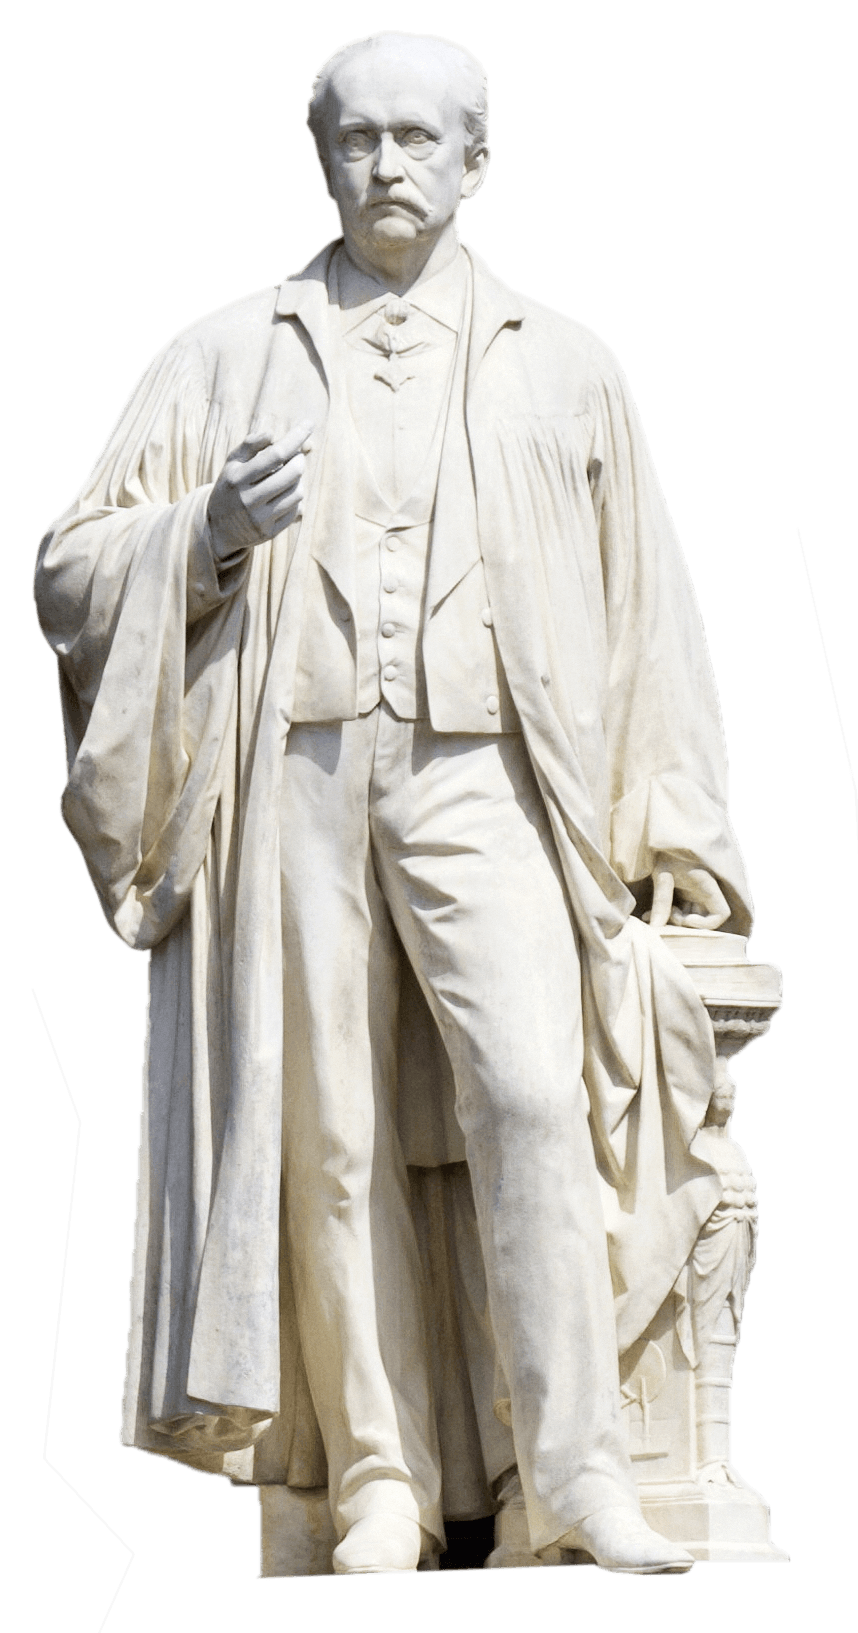 Statue de Helmholtz à l'université de Humboldt.